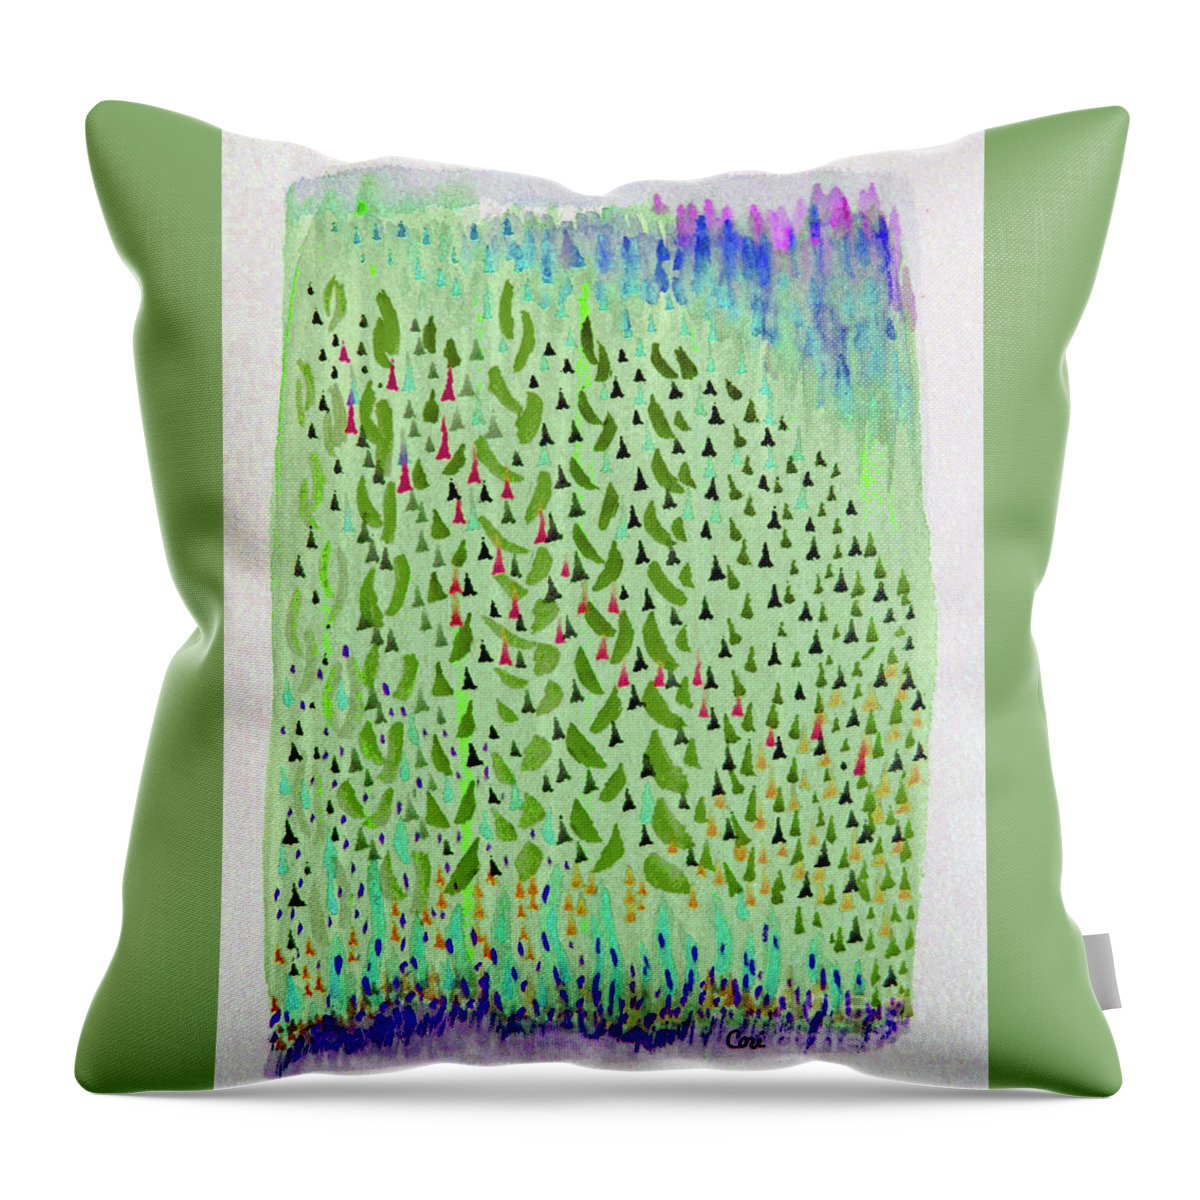 Green Yellow Throw Pillow featuring the digital art Aspen Green by Corinne Carroll